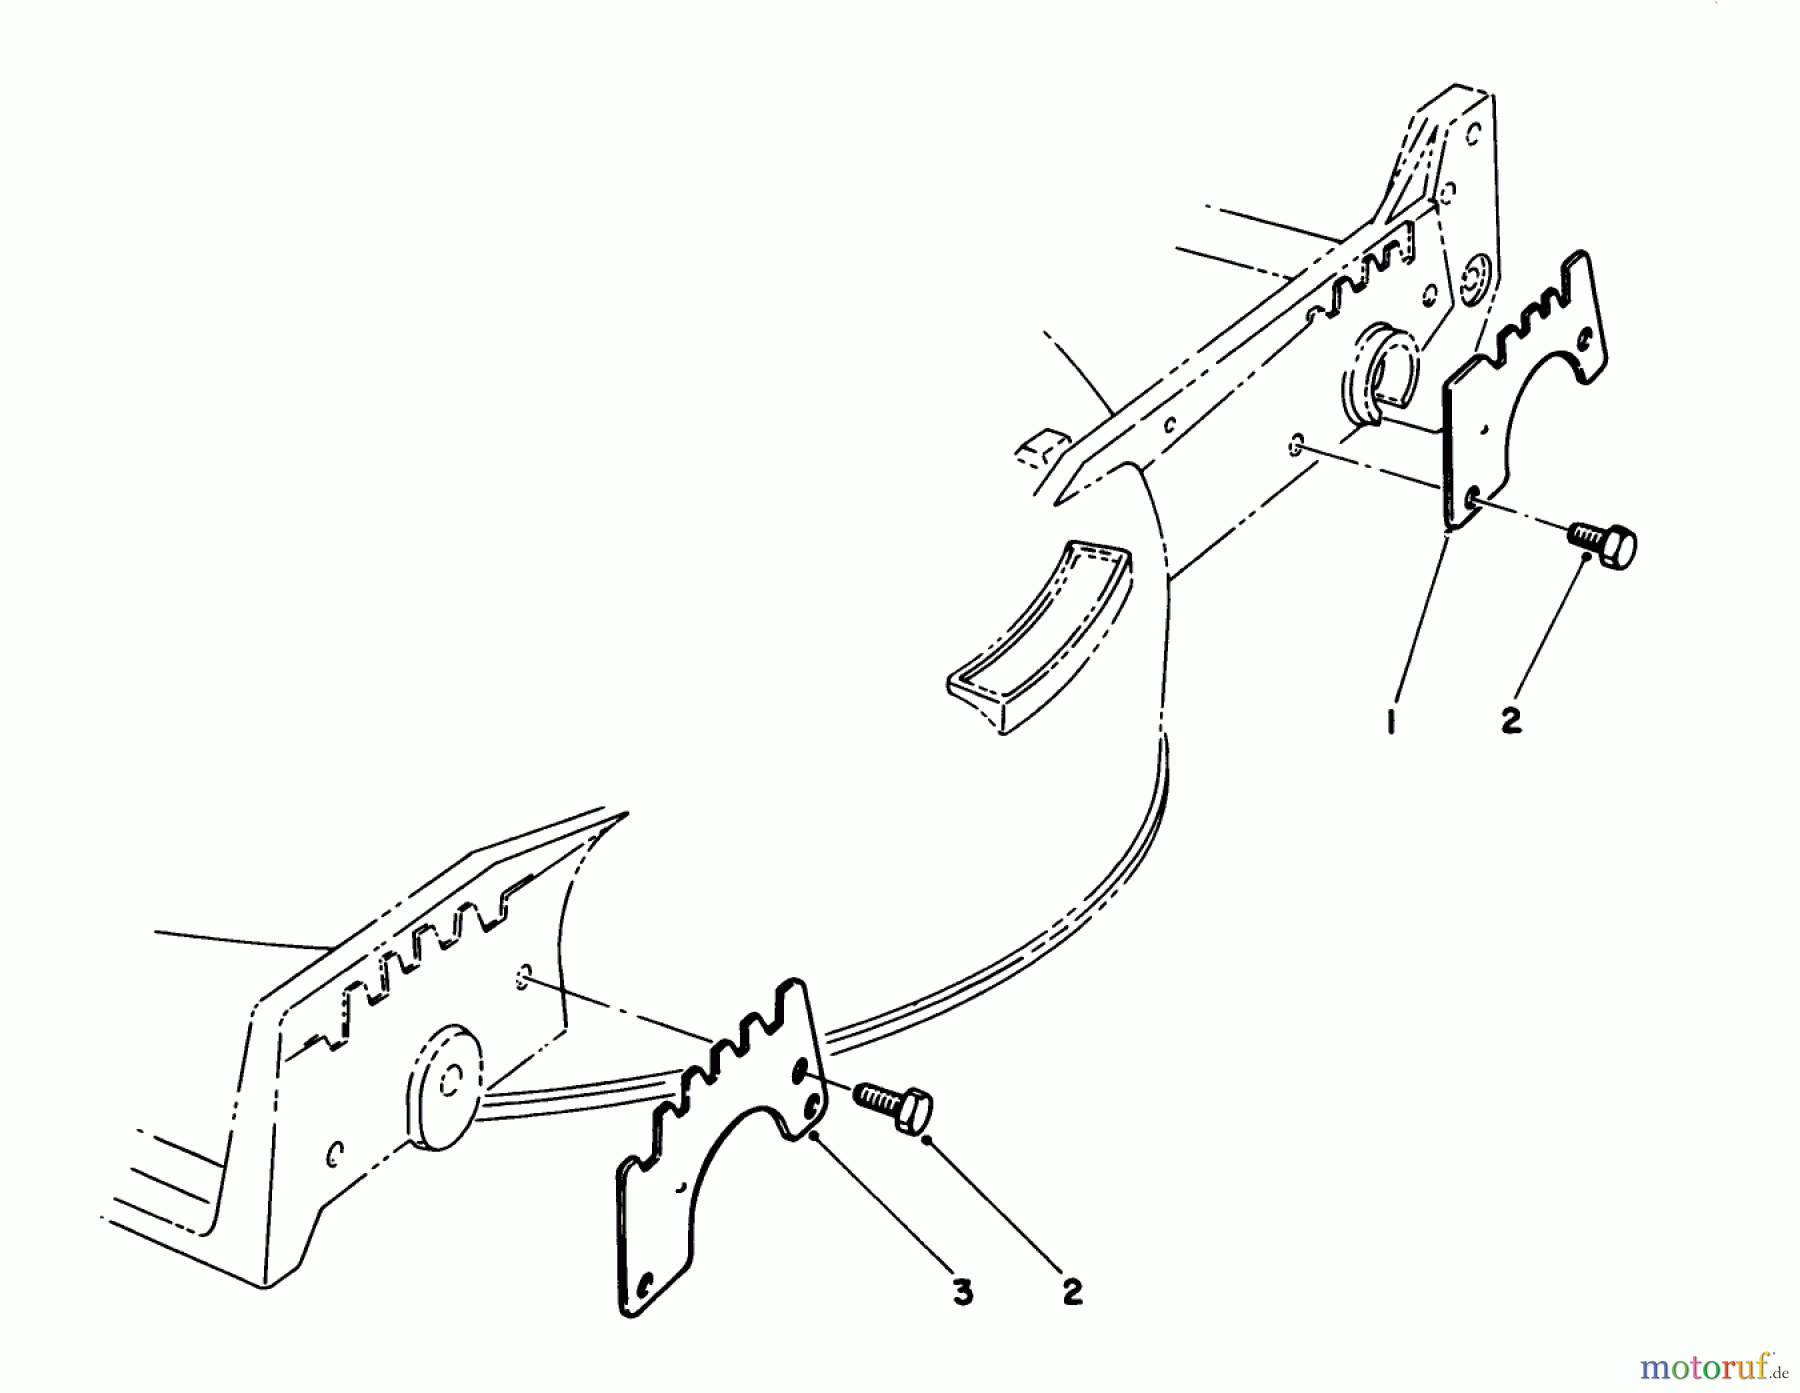  Toro Neu Mowers, Walk-Behind Seite 1 20624C - Toro Lawnmower, 1988 (8000001-8999999) WEAR PLATE KIT NO. 49-4080 (OPTIONAL)